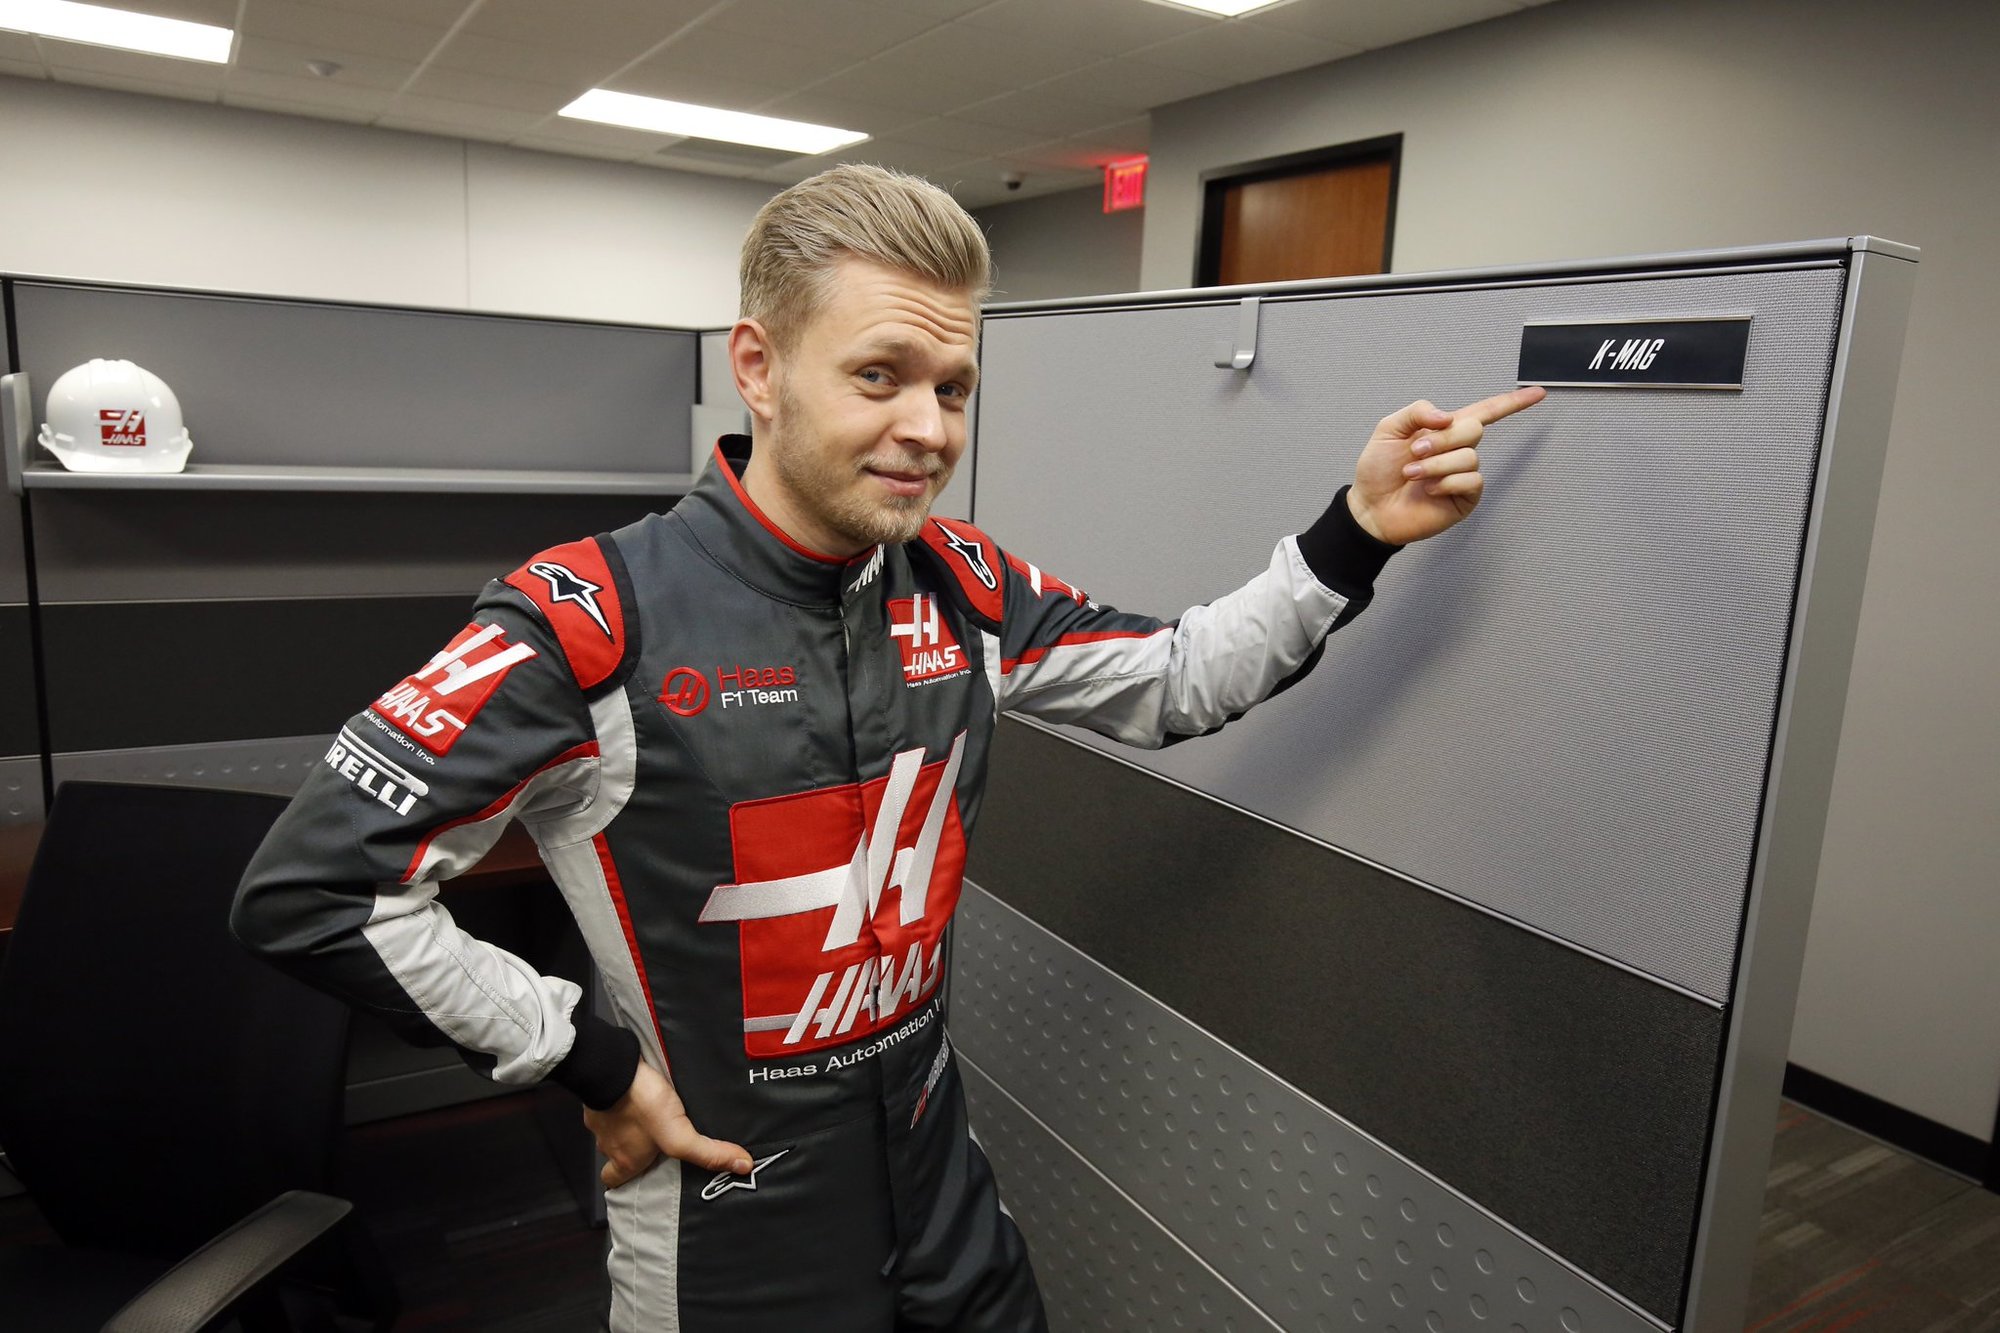 Prožije Kevin v týmu Haas lepší sezónu než loni?